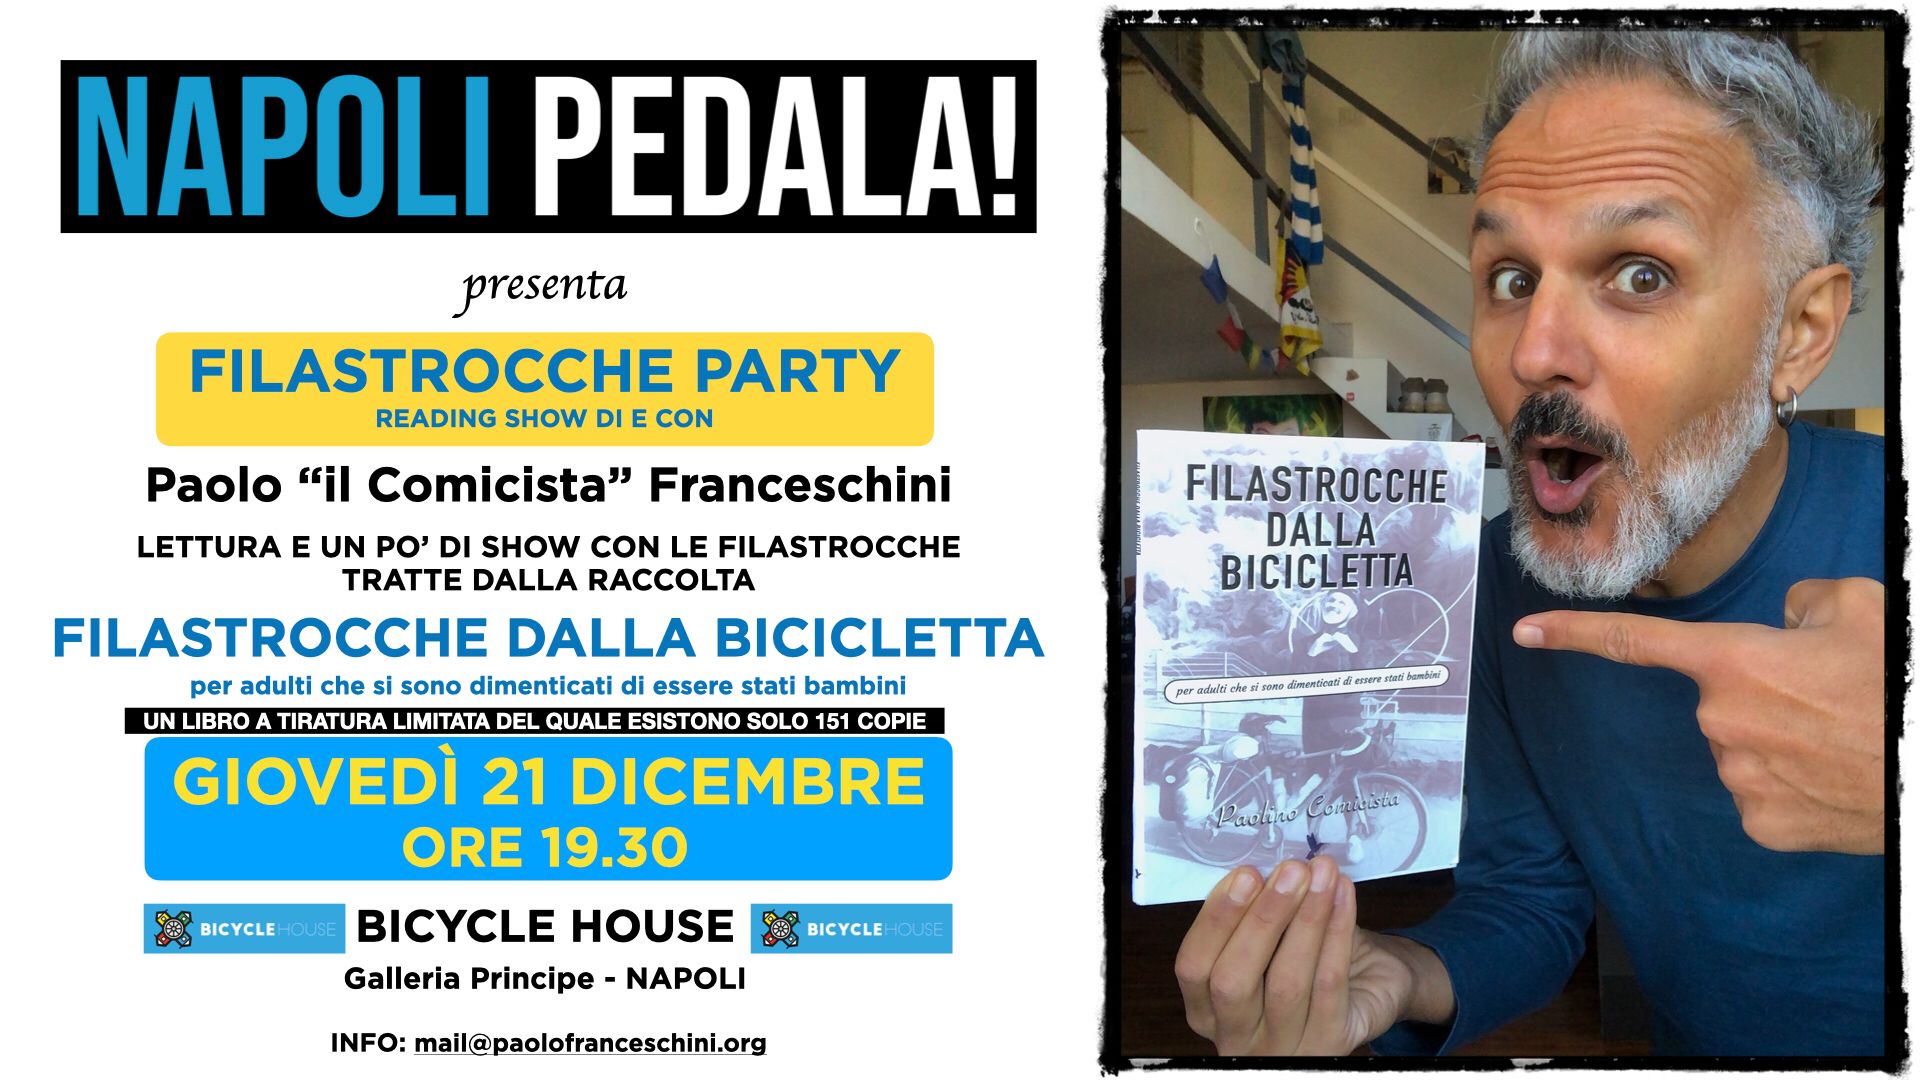 Al momento stai visualizzando Filastrocche party – presentazione del libro di Paolo “il Comicista” Franceschini